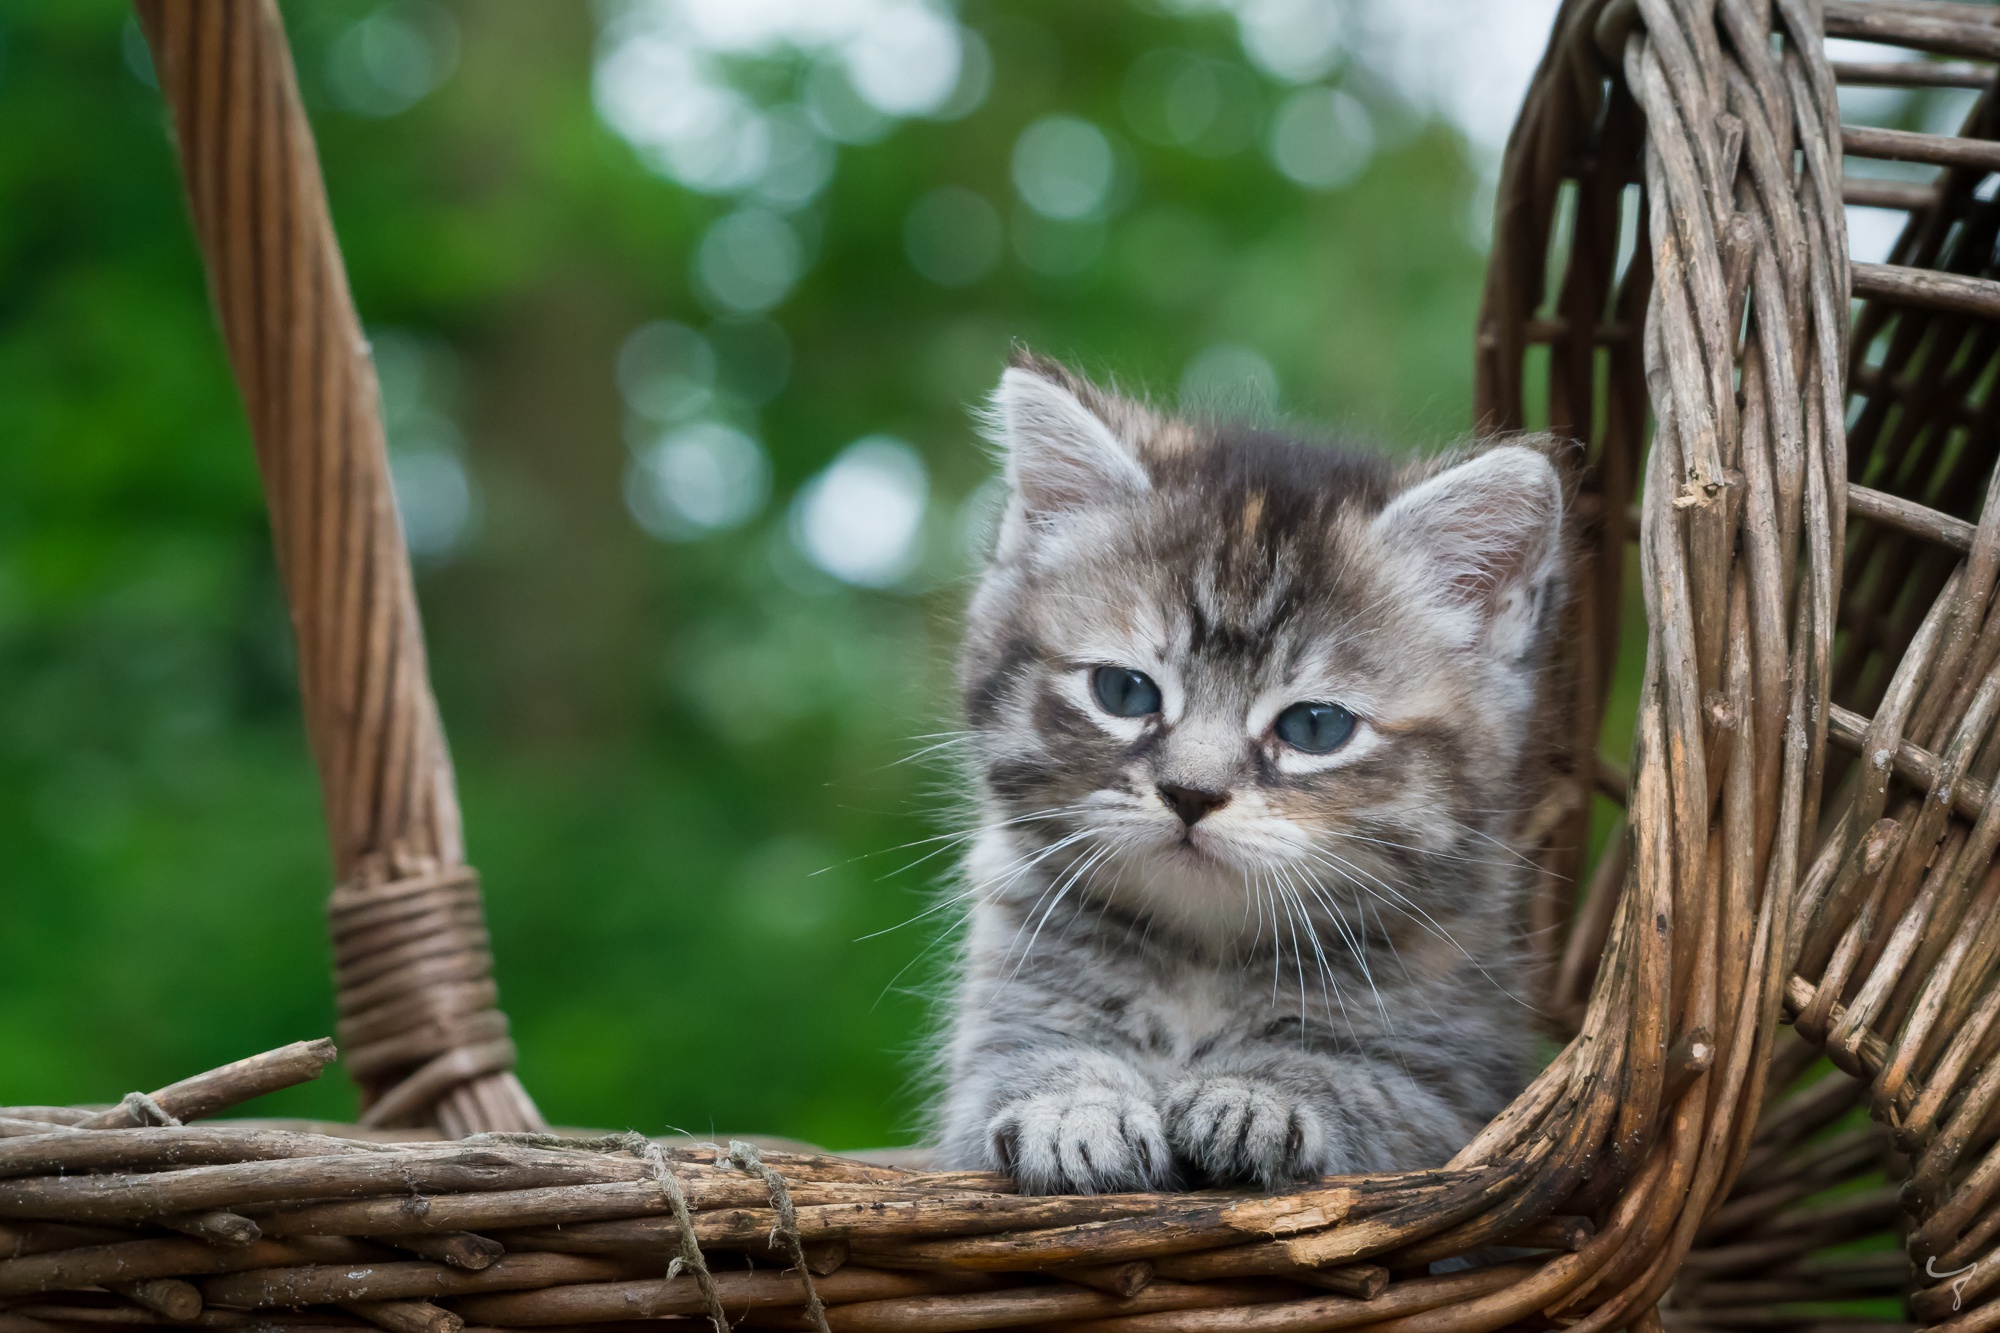 General 2000x1333 kittens cats animals mammals baskets outdoors feline closeup